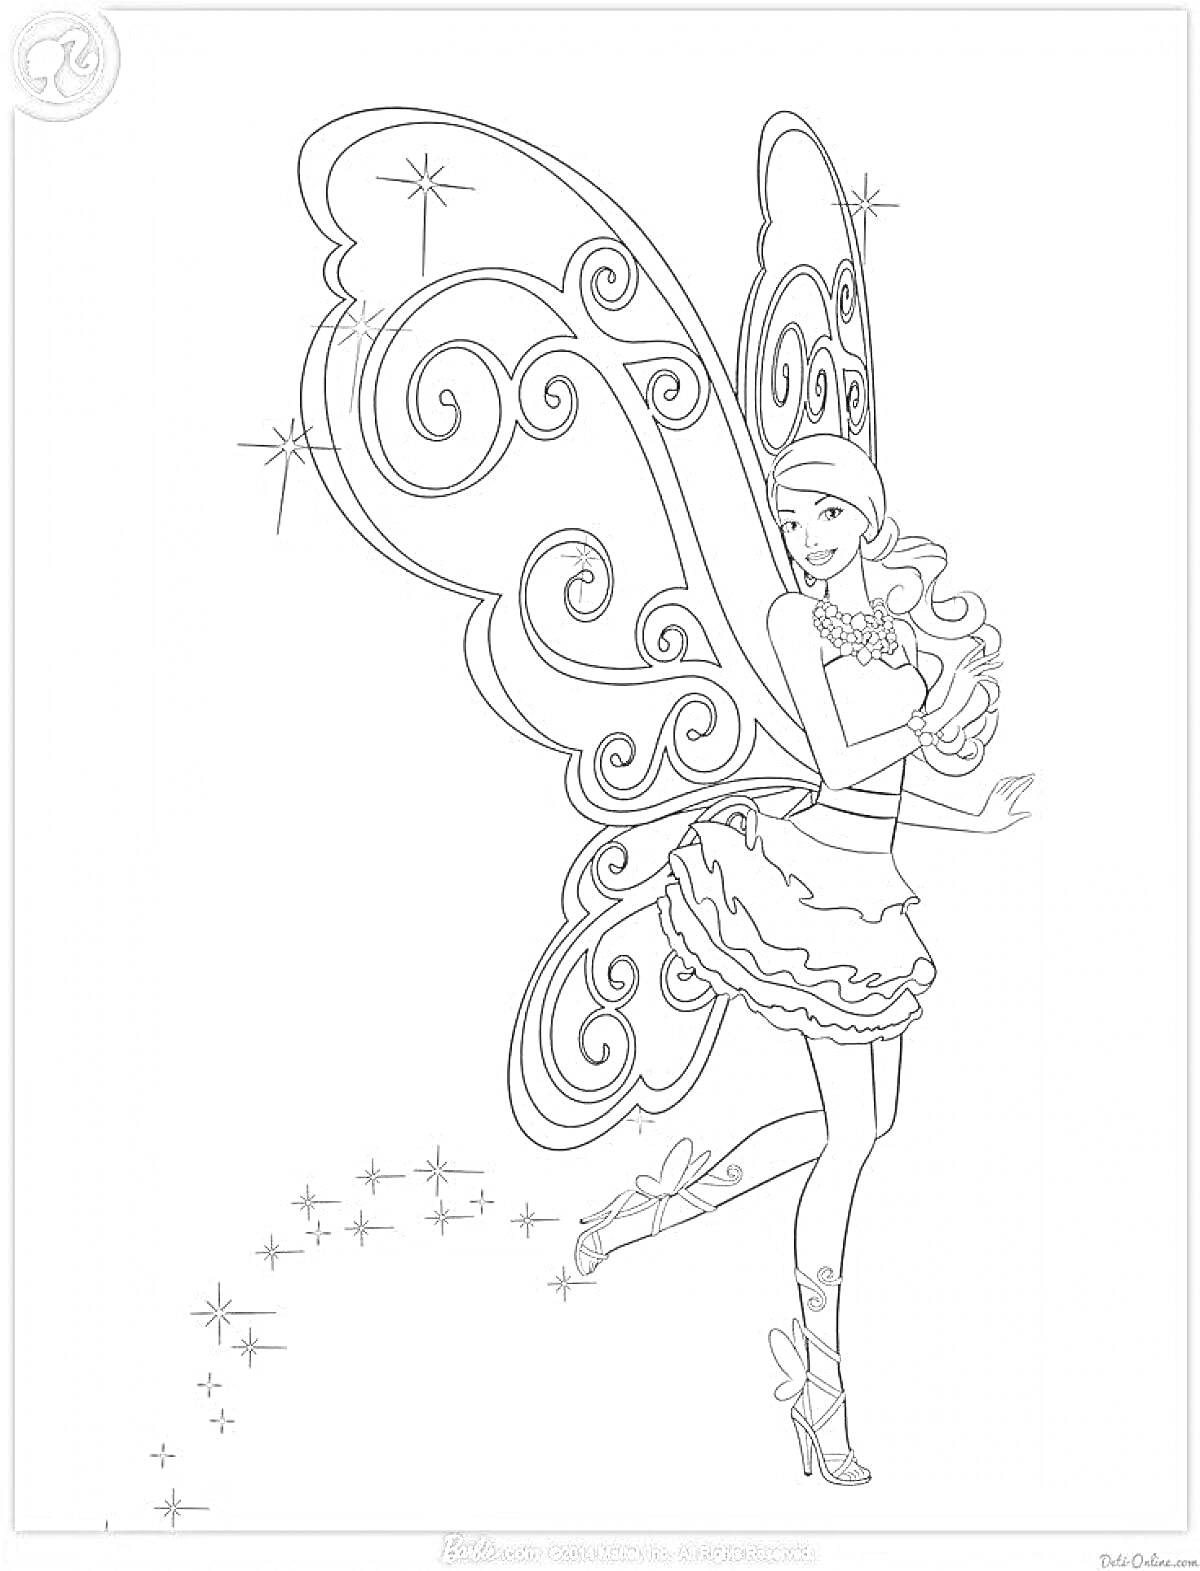 Раскраска Барби фея в платье с крыльями, на высоких каблуках, со звездочками